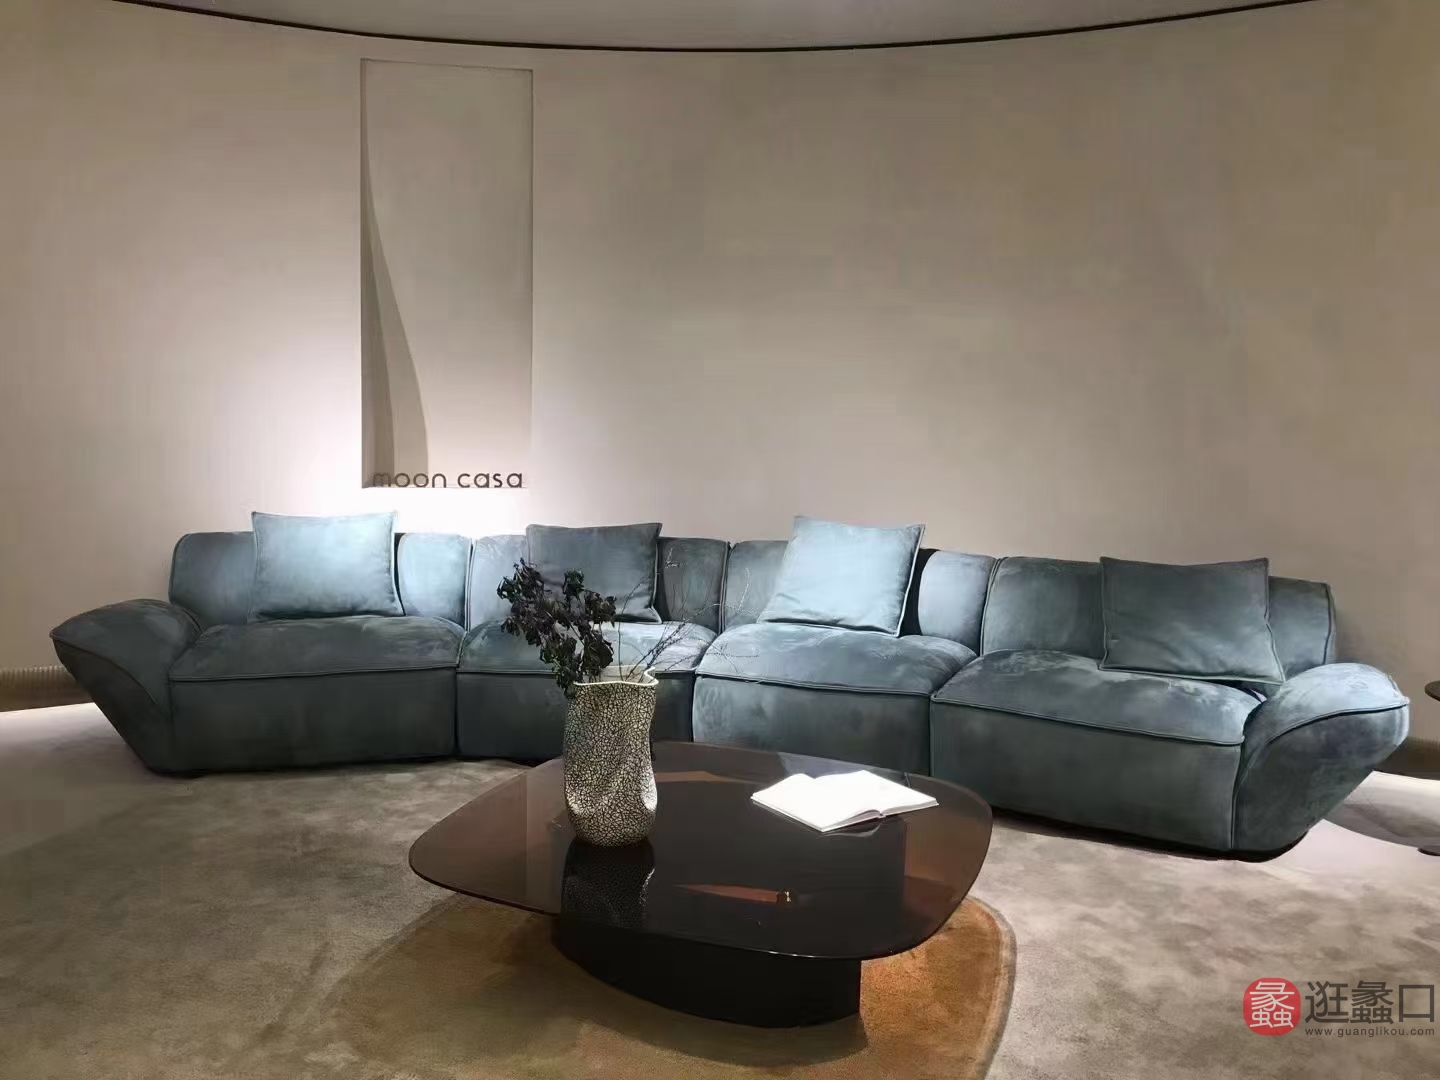 简欧风格客厅沙发设计效果图欣赏 – 设计本装修效果图